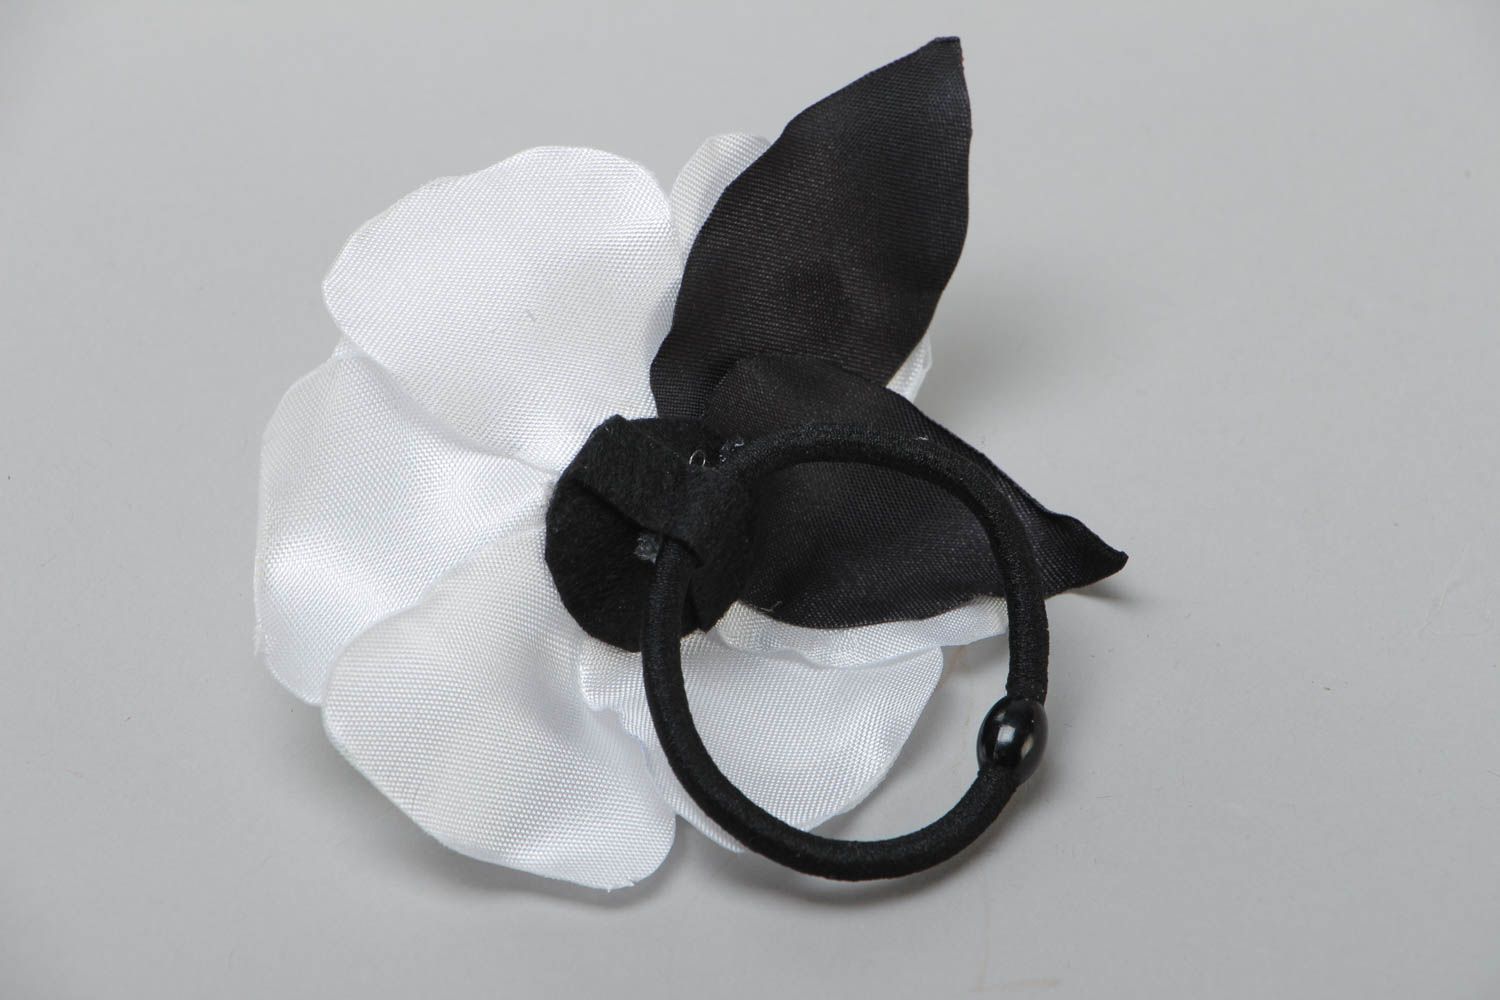 Handmade Haargummi mit Blume aus Atlasbändern weiße Rose von Handarbeit zart schön foto 4